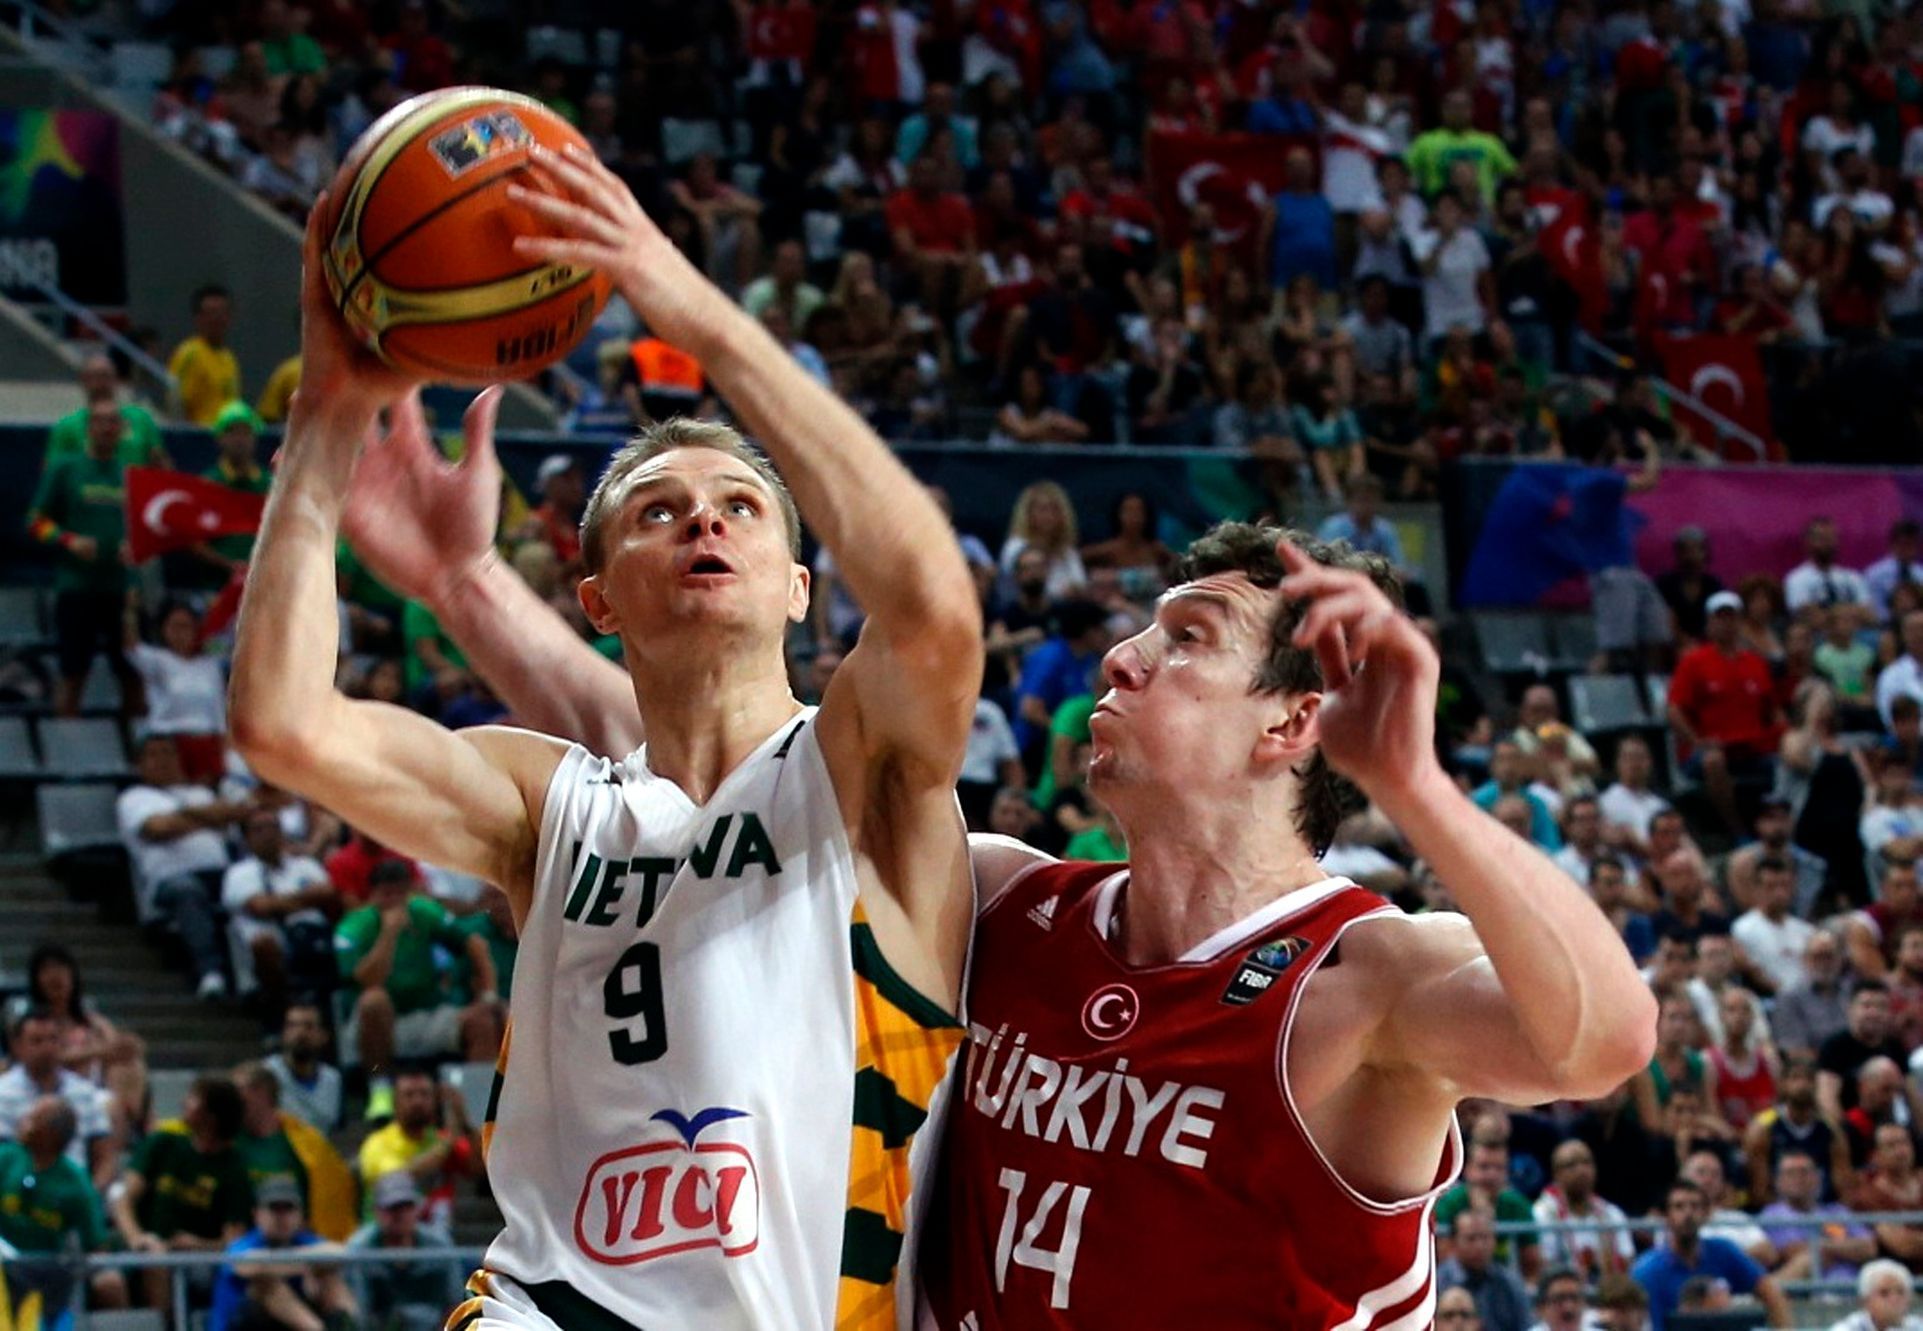 MS v basketbalu 2014: Litva - Turecko (Seibutis, Ašik)